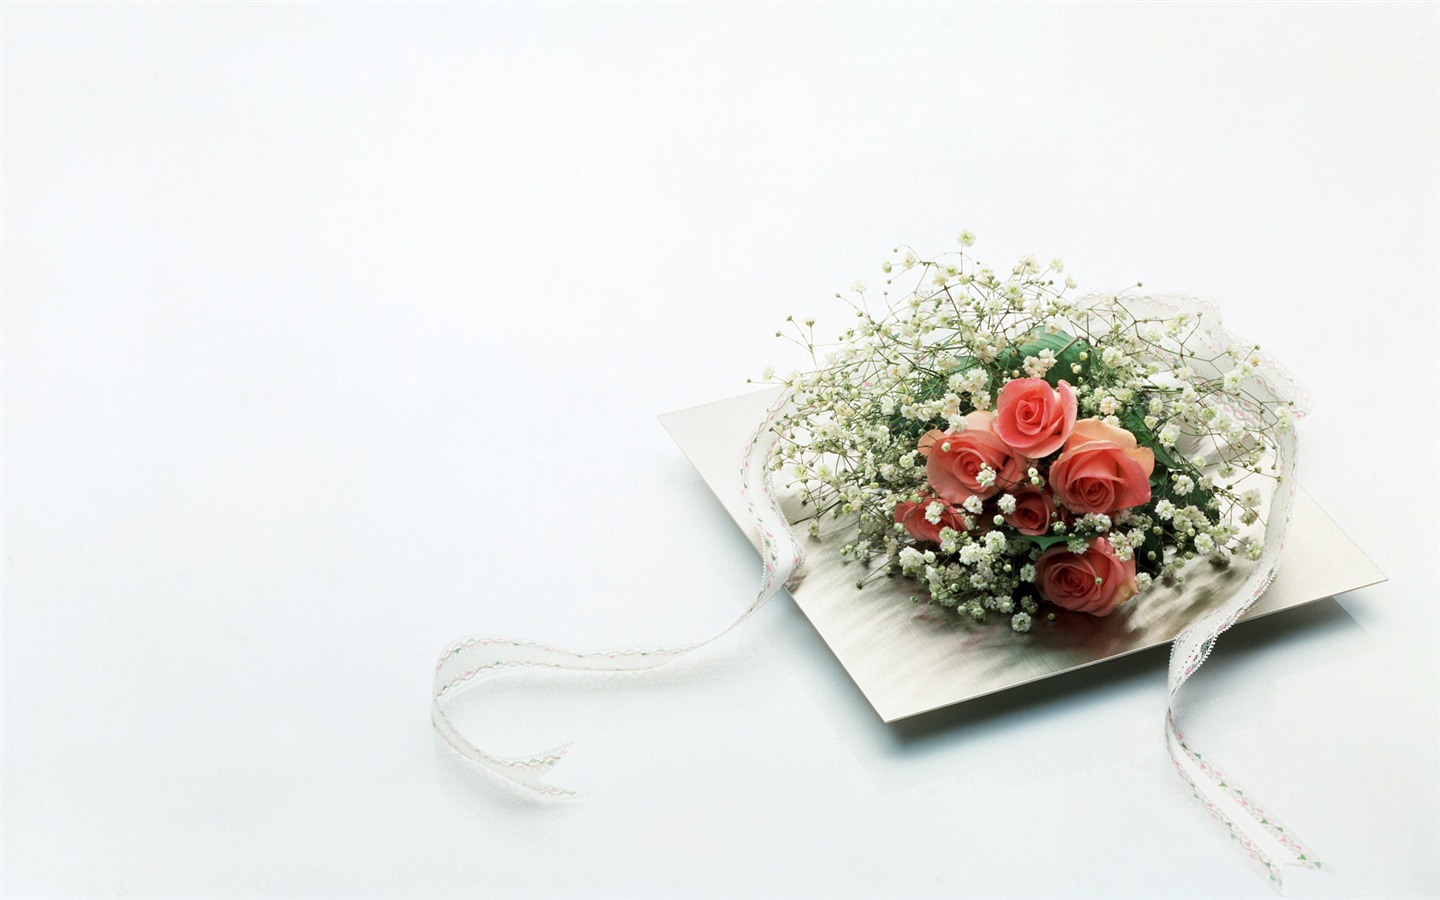 婚庆鲜花物品壁纸(二)3 - 1440x900